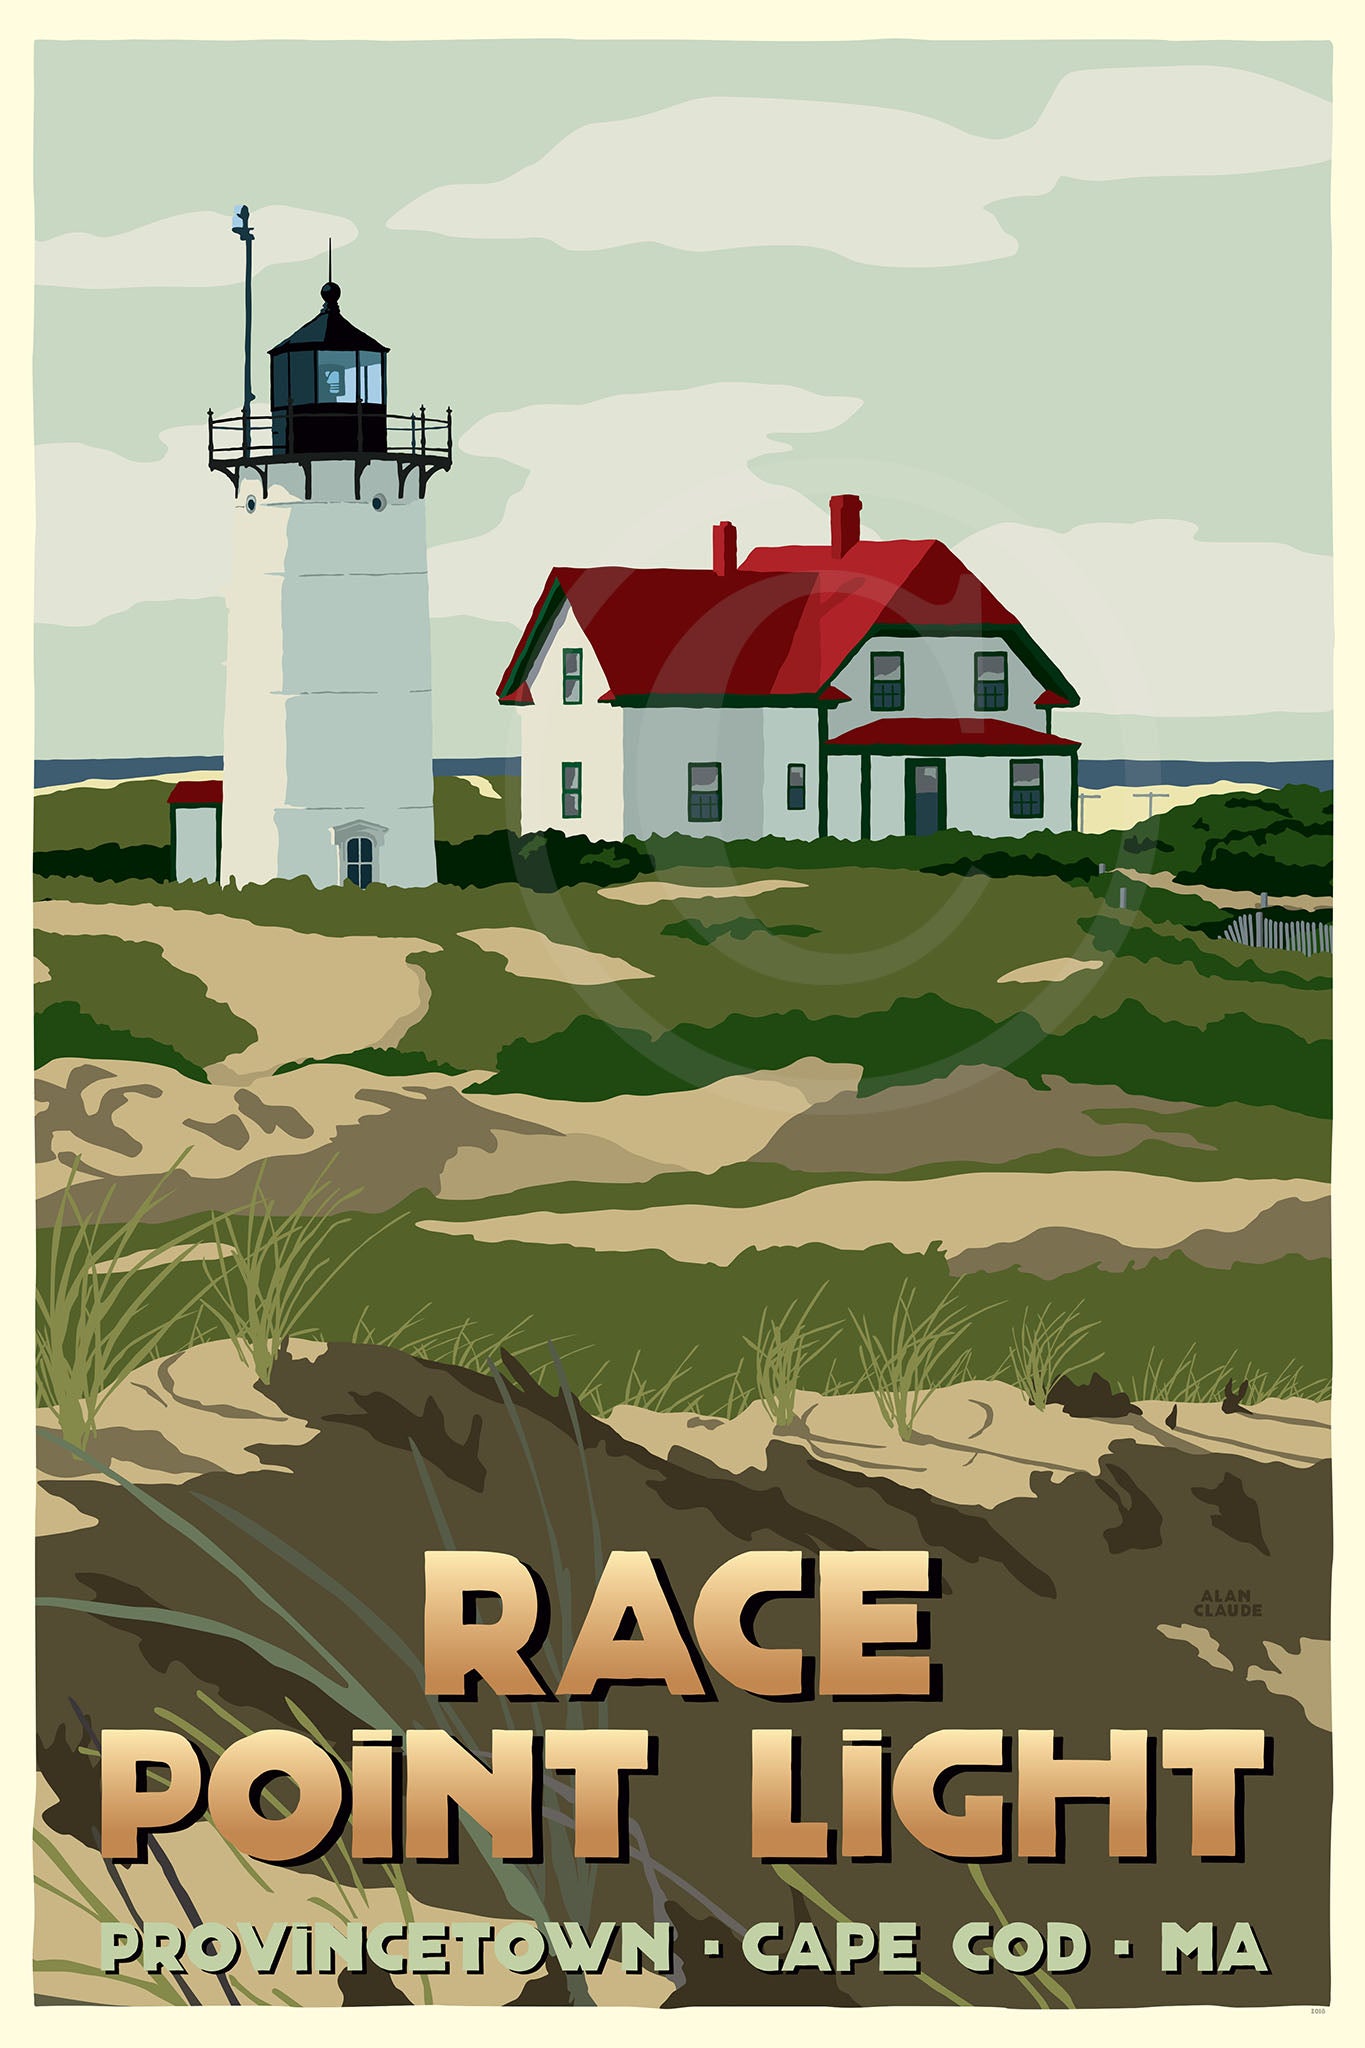 Race Point Light Art Print 24" x 36" Travel Poster By Alan Claude - Massachusetts